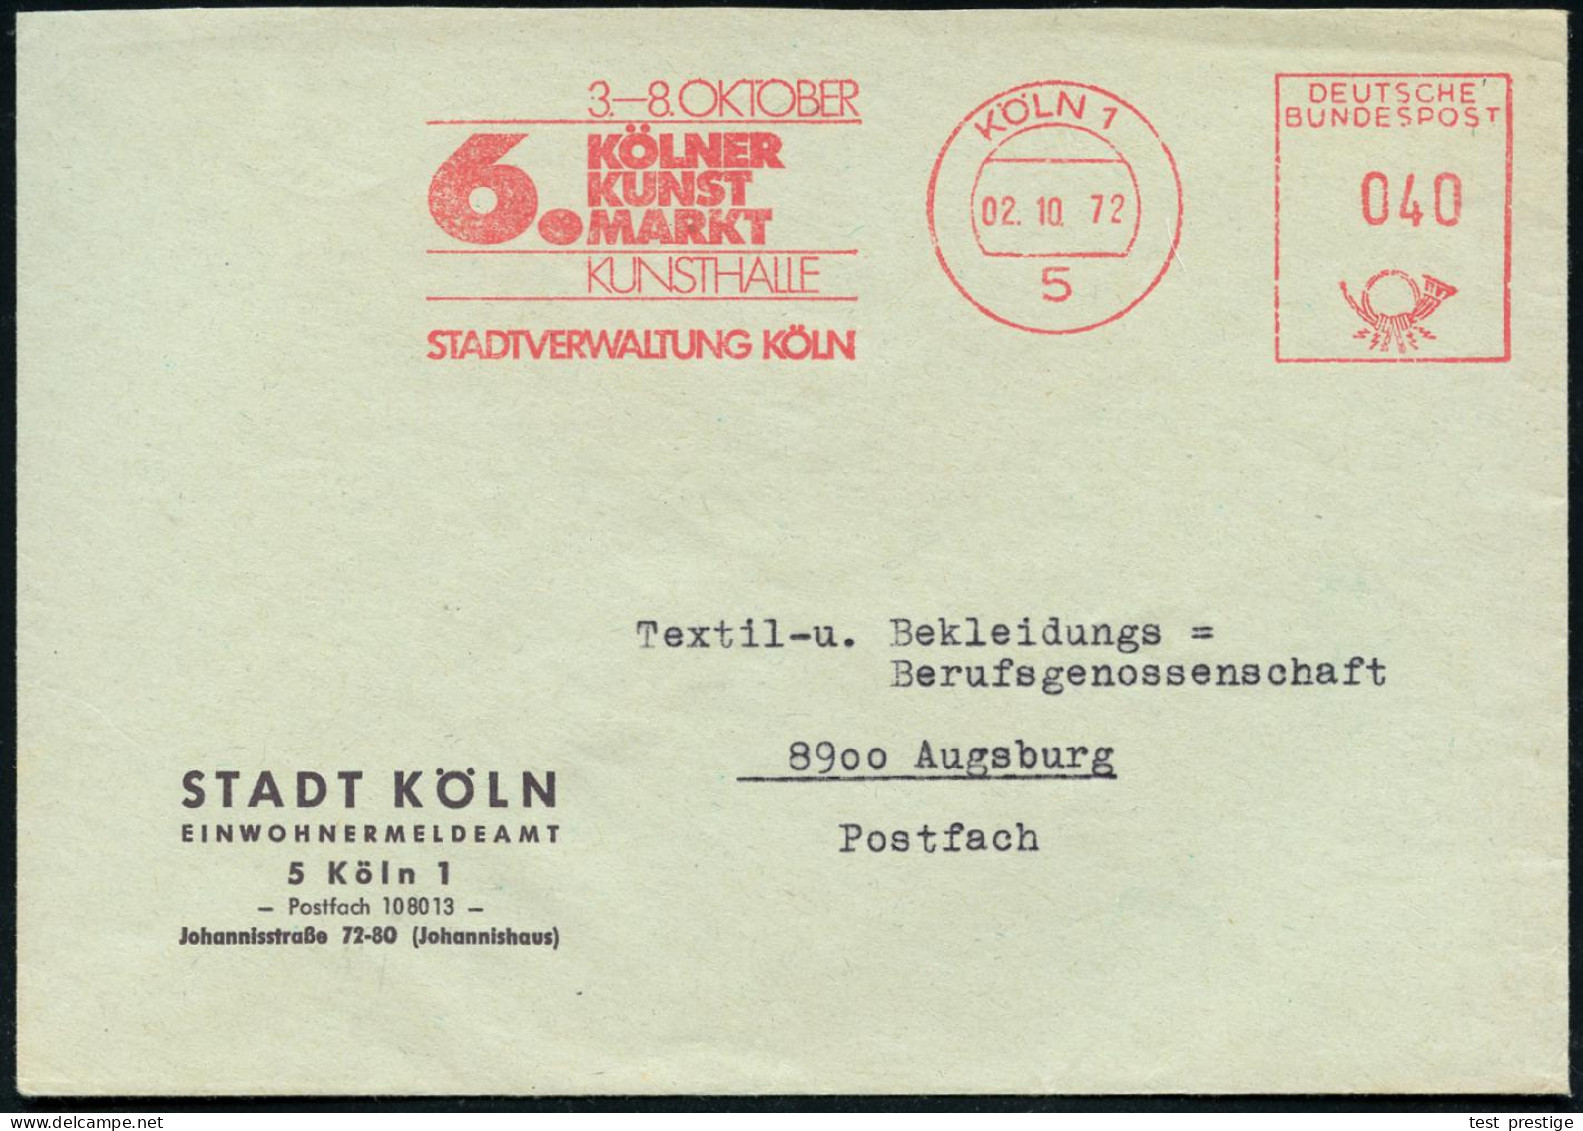 5000 KÖLN 1/ 3.-8.Oktober/ 6.KÖLNER/ KUNST/ MARKT../ STADTVERWALTUNG 1972 (2.10.) Seltener AFS Auf Kommunal-Bf.: STADT K - Other & Unclassified